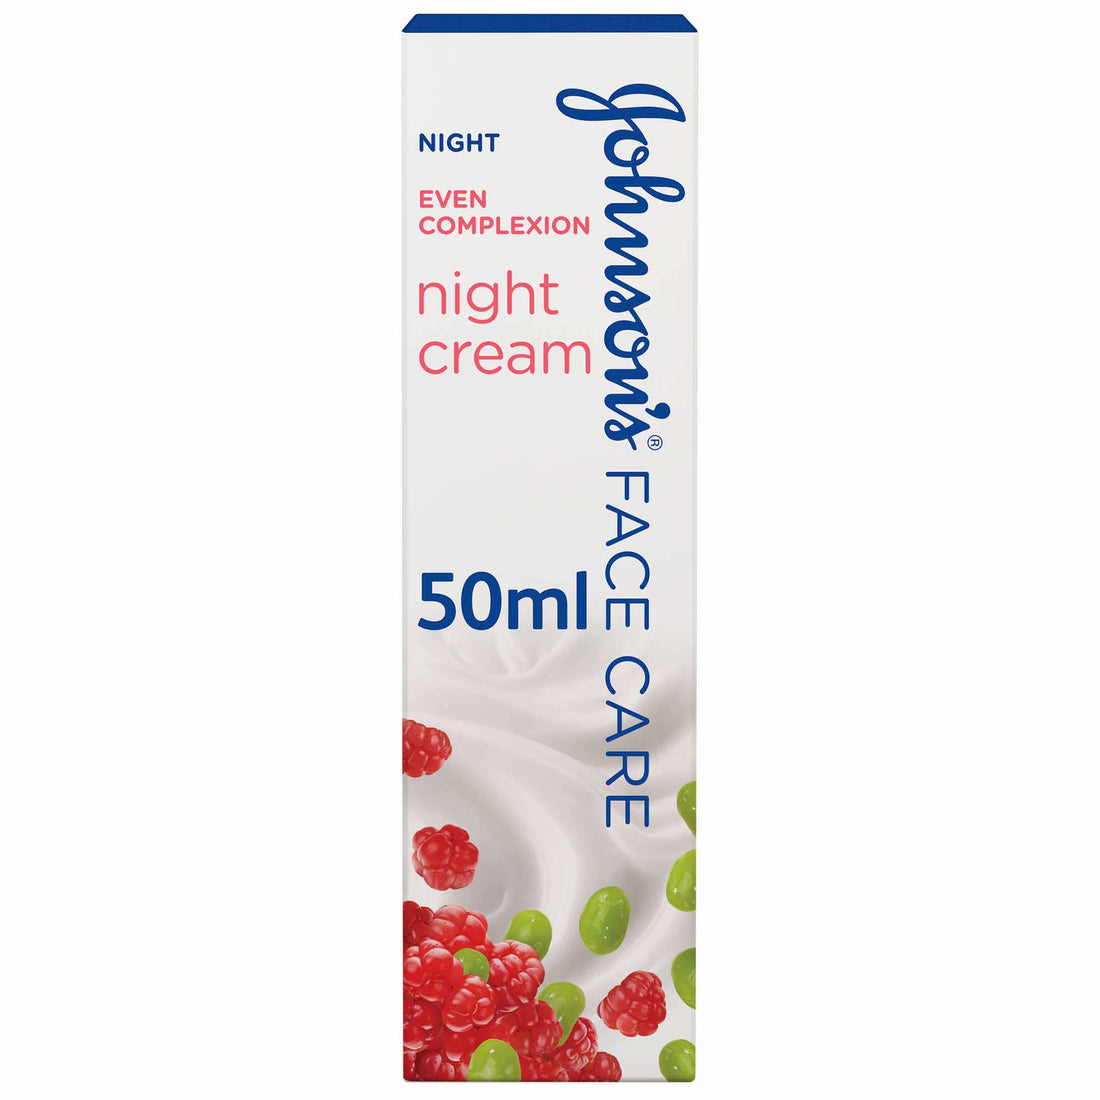 JOHNSON’S Night Cream, Even Complexion, 50ml